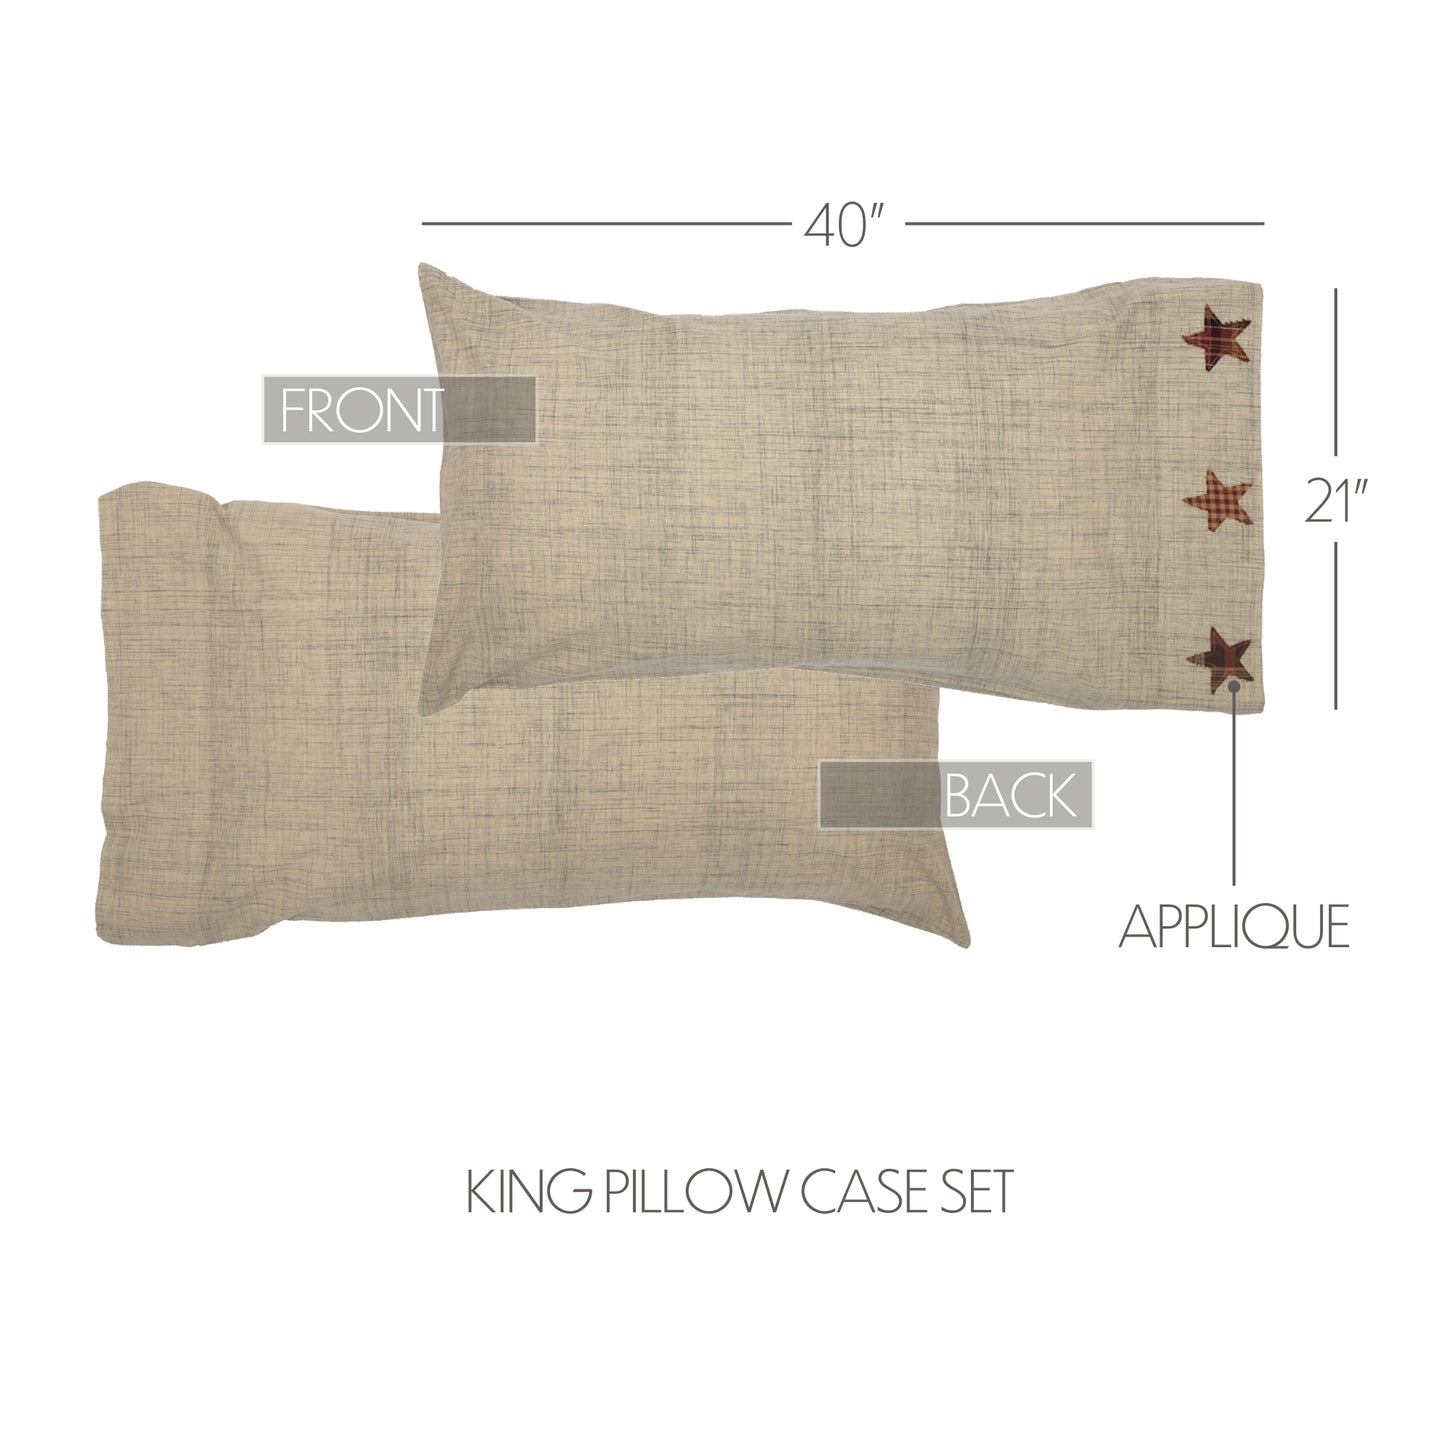 Abilene Star King Pillow Case Set of 2 21x40 SpadezStore